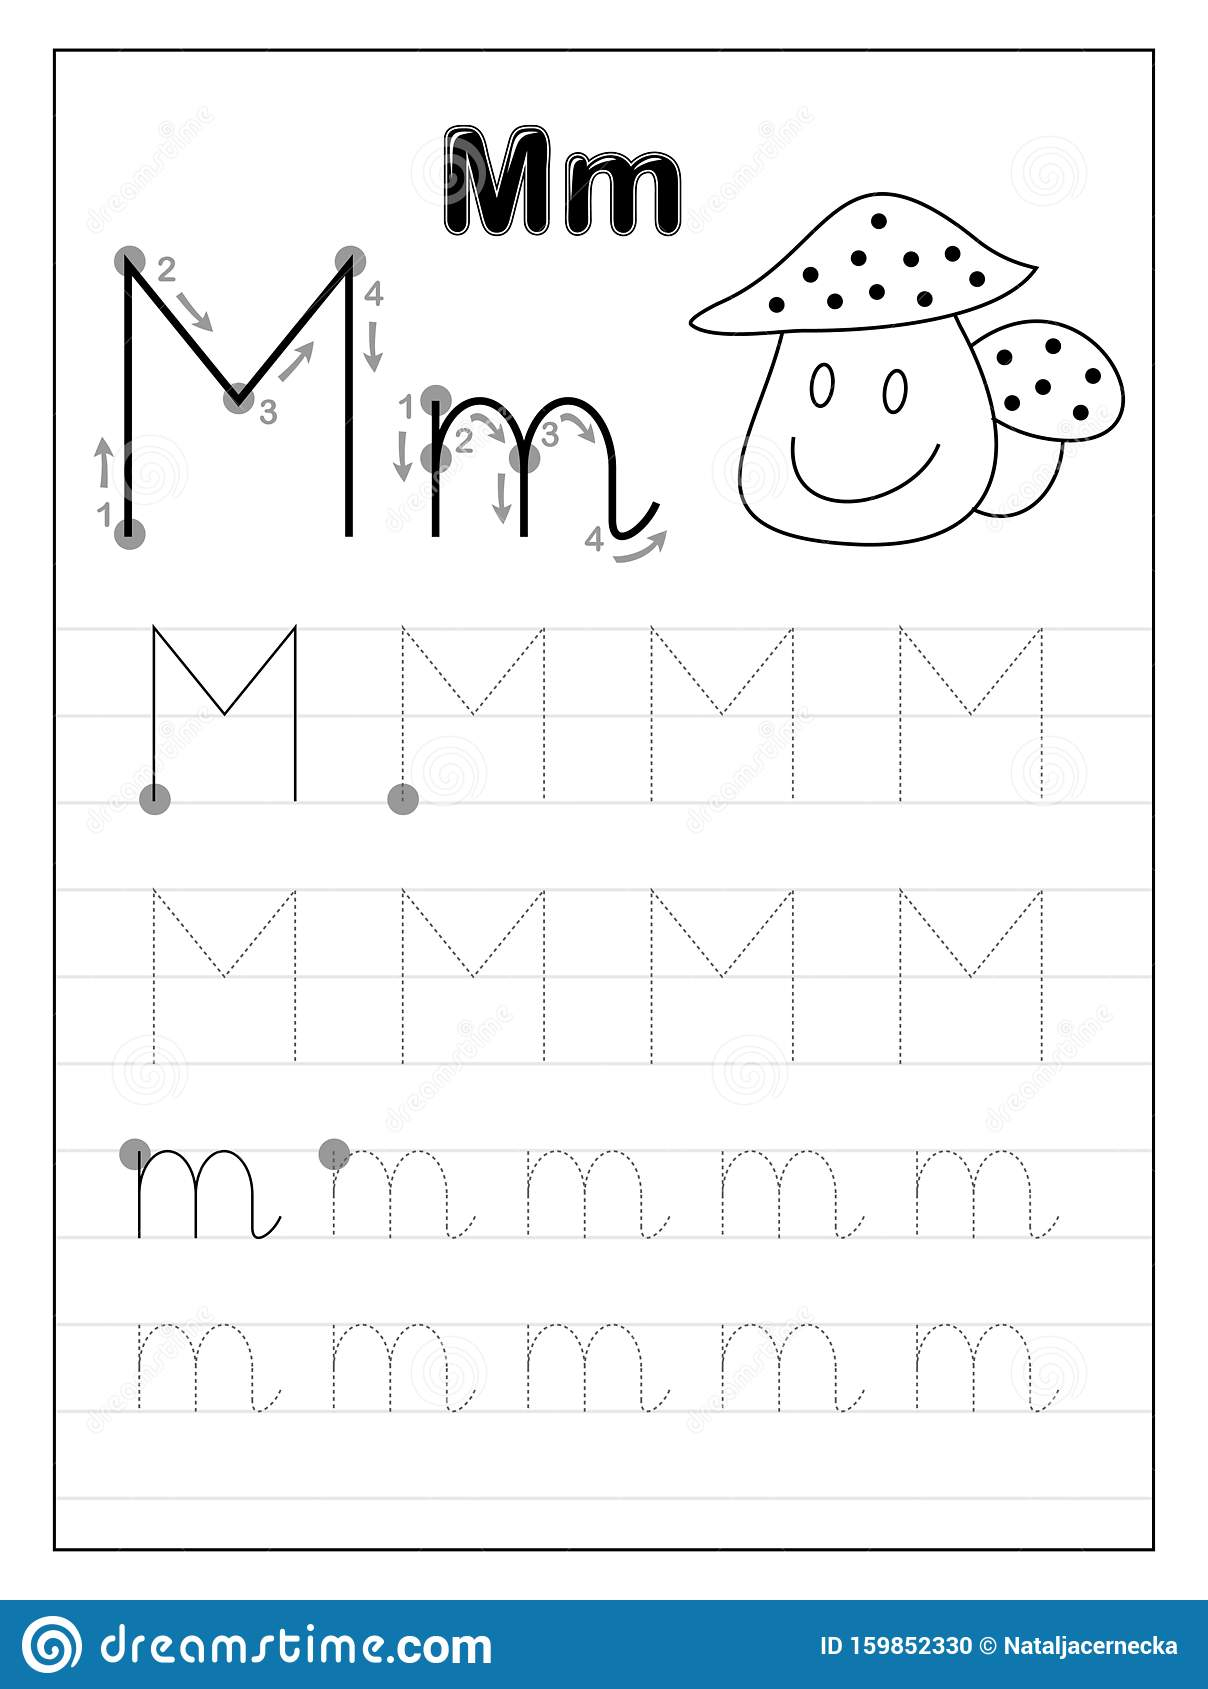 tracing-letter-m-worksheets-kindergarten-tracinglettersworksheetscom-tracing-letter-m